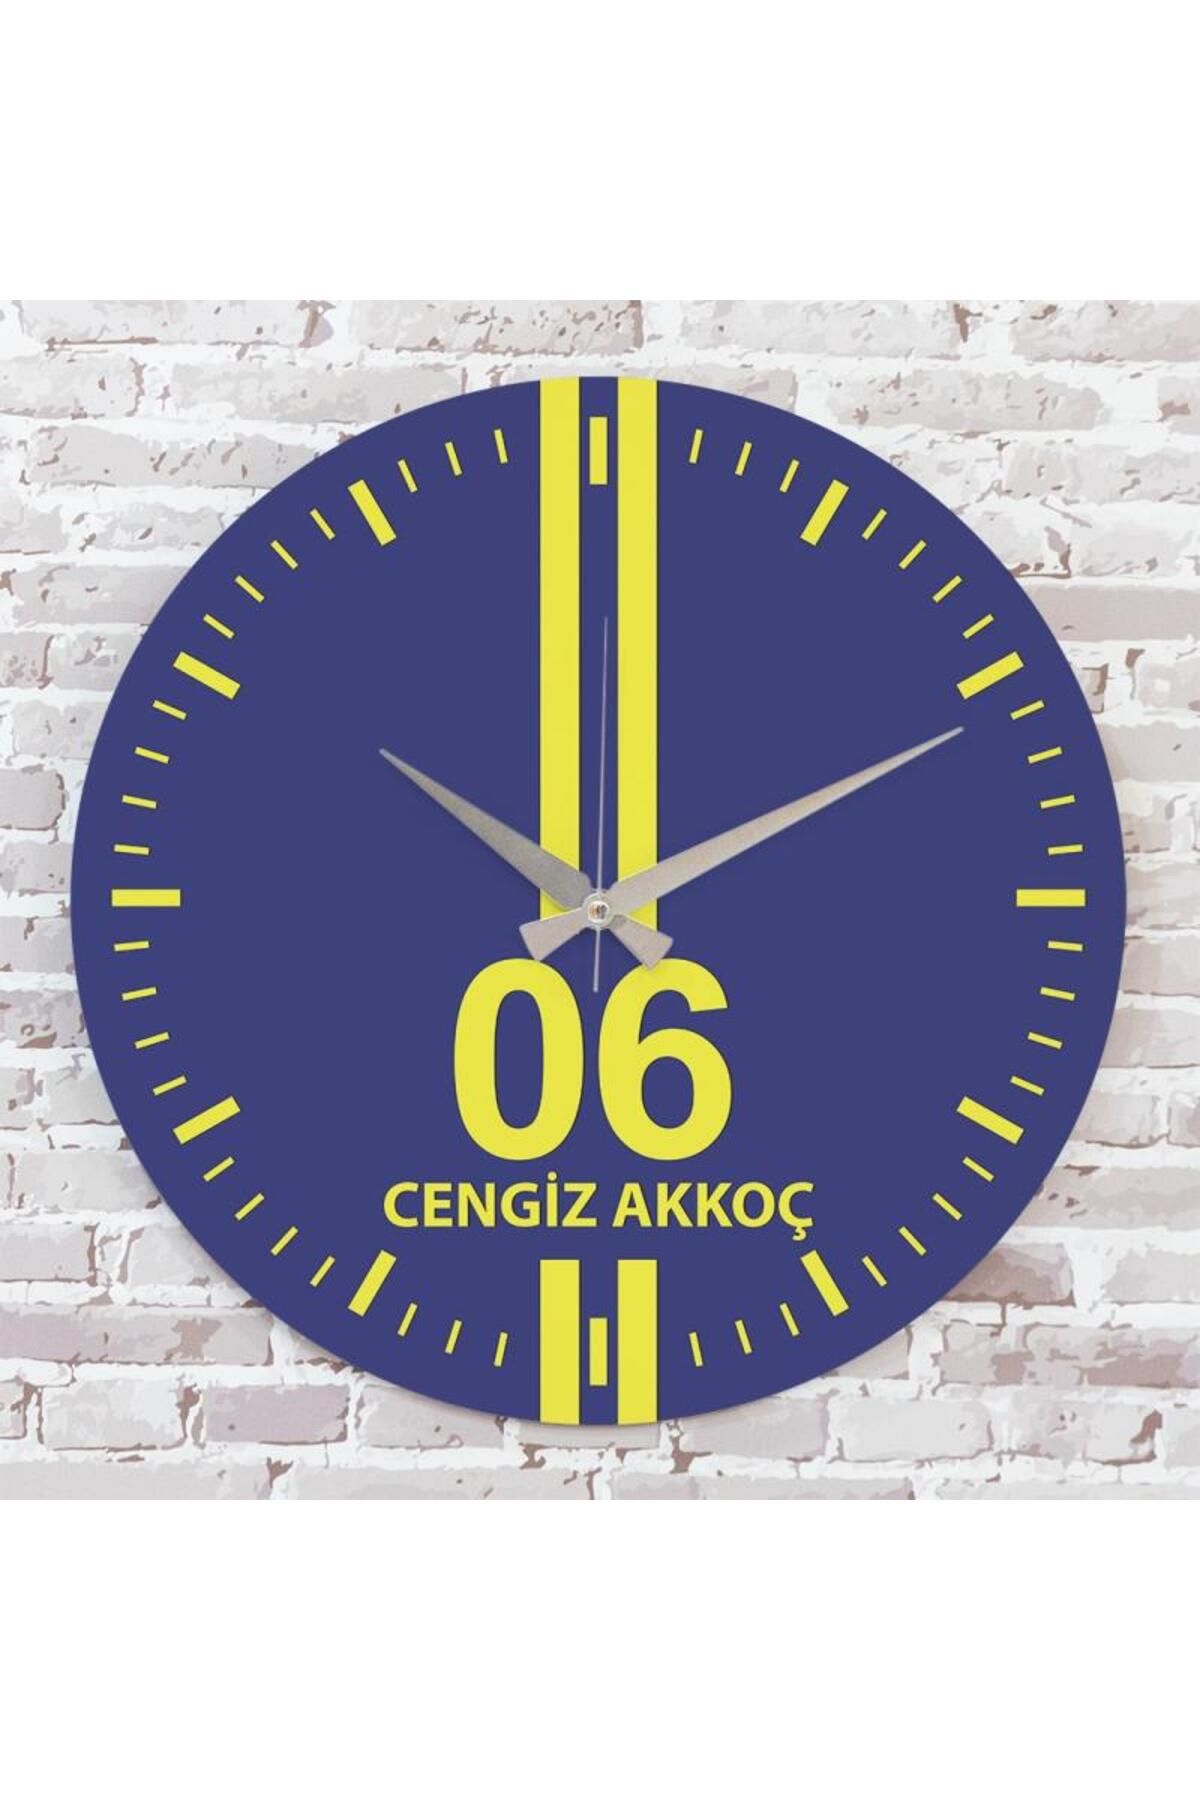 Pera Sarı & Lacivert Ankaralılara Hediye Özel Ahşap Saat 33cm KA02-1550